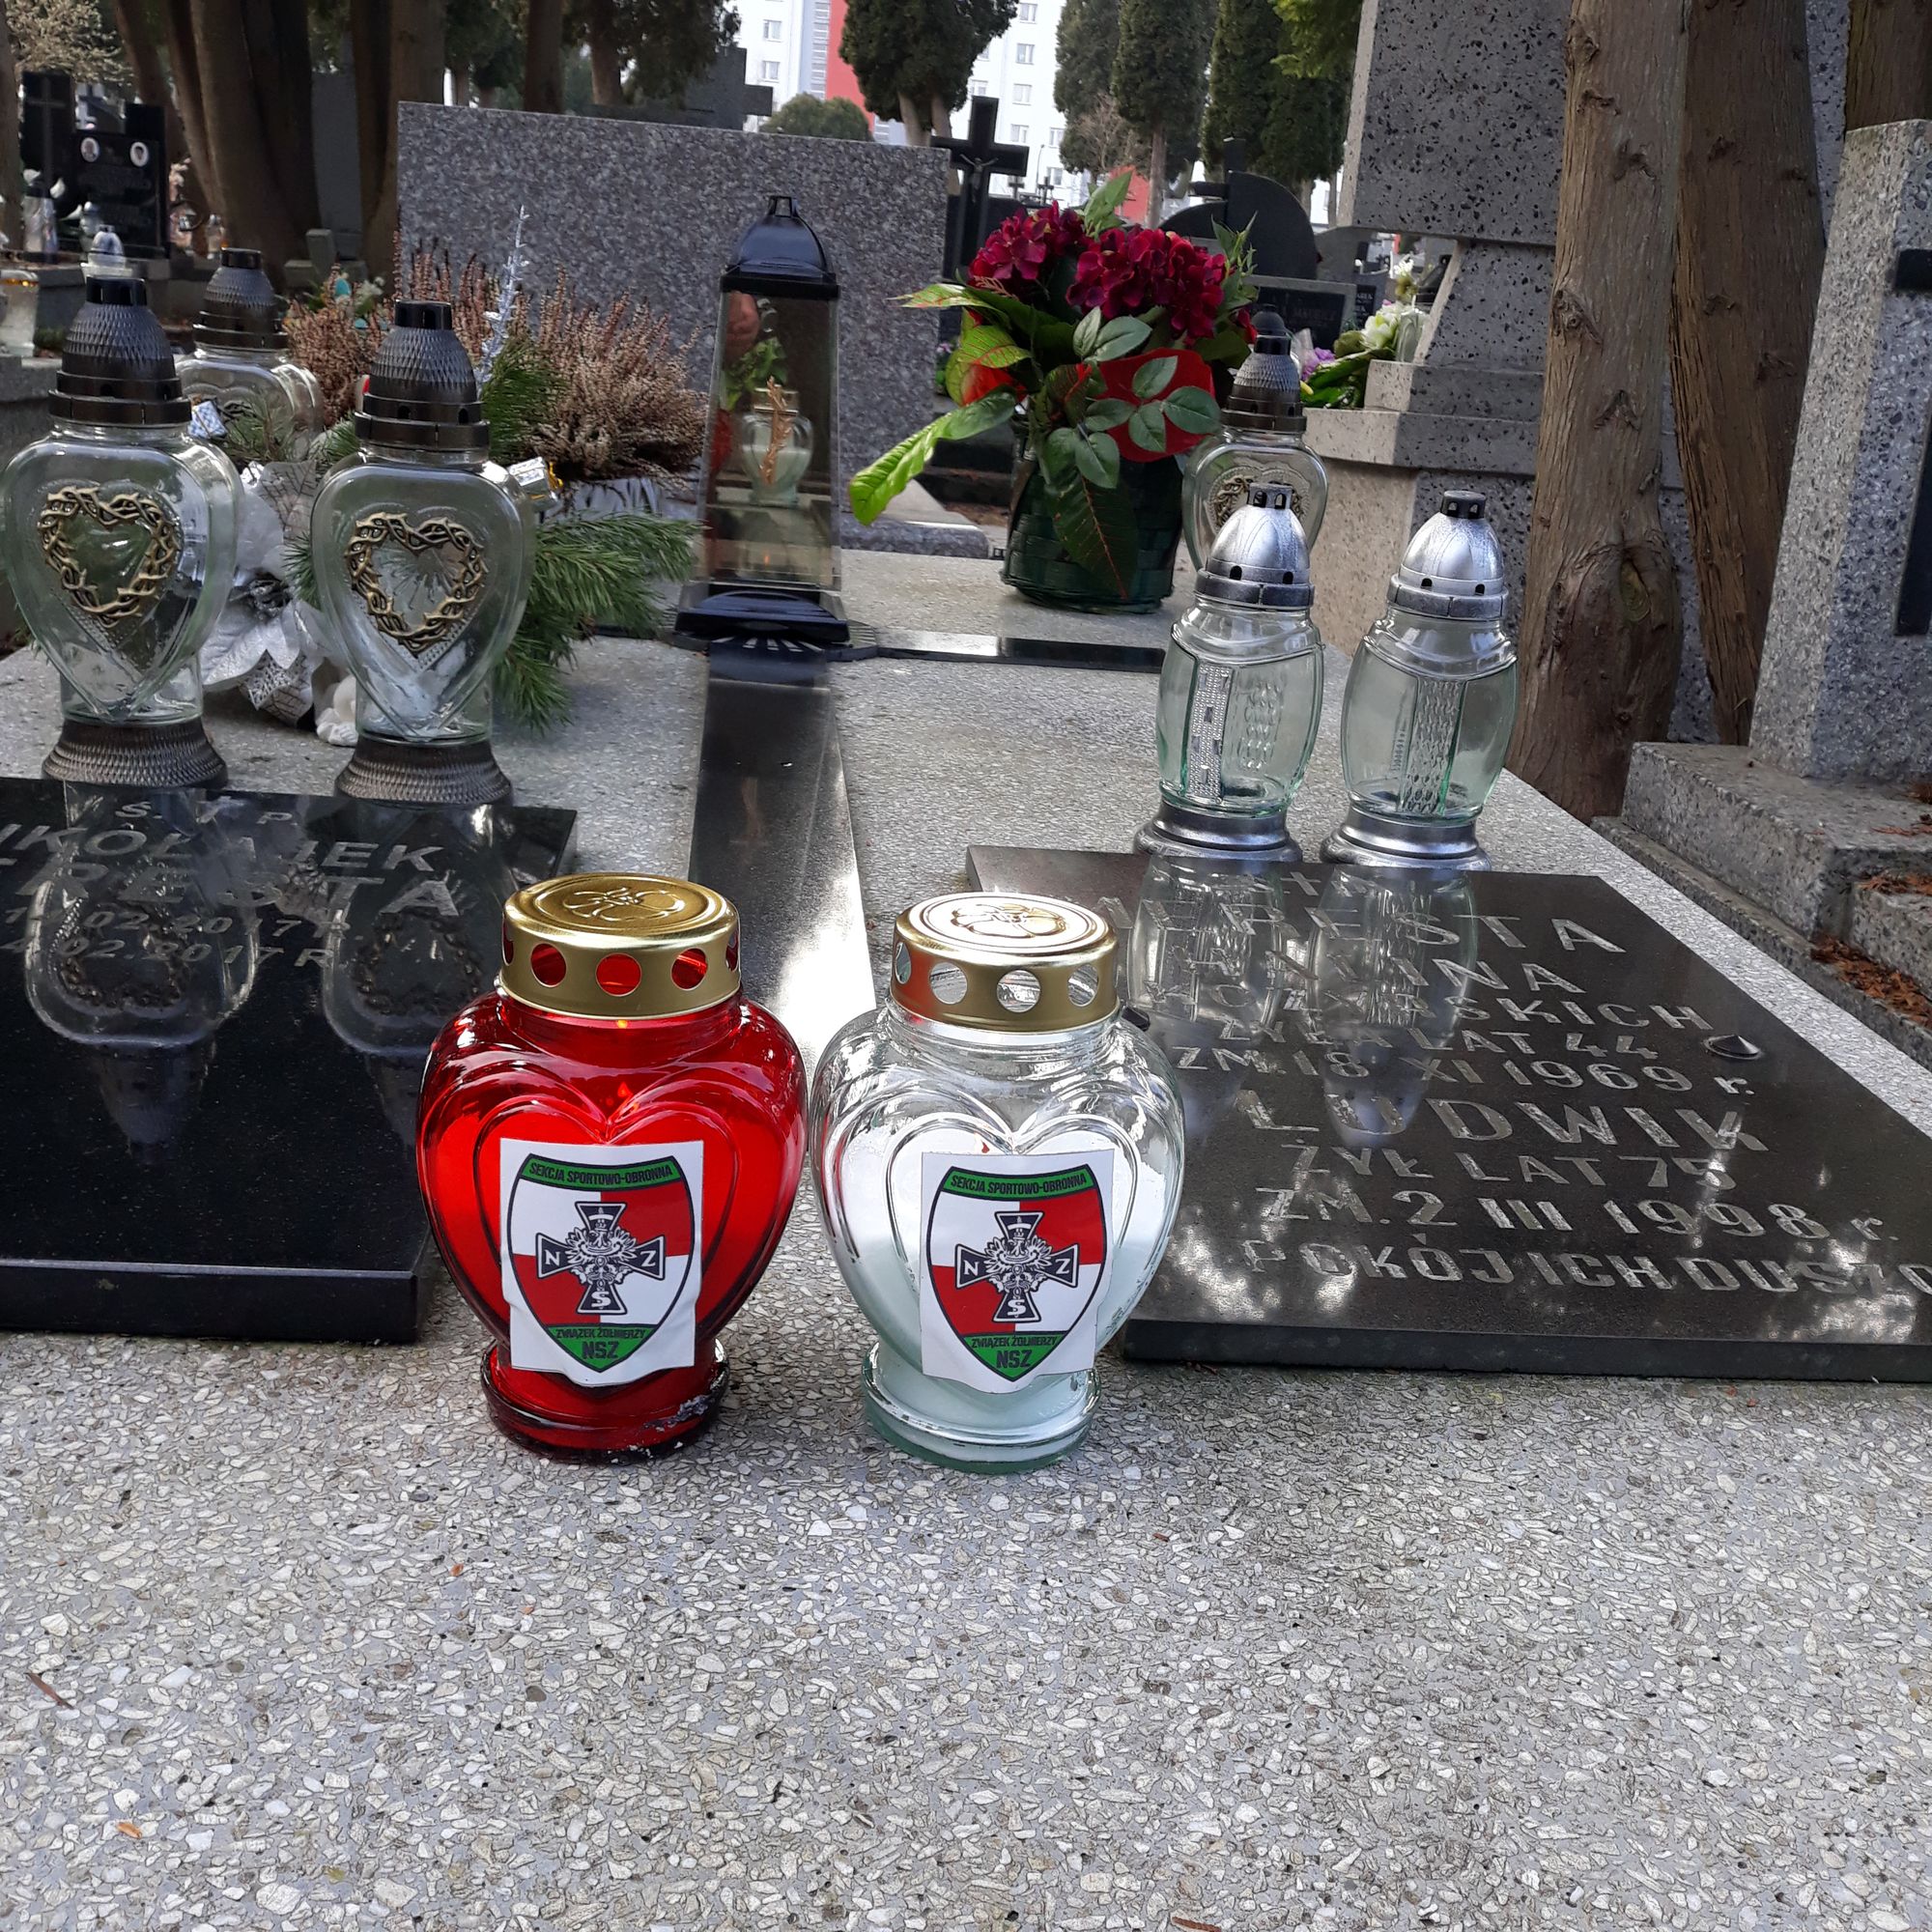 Akcja "Znicz dla Bohatera" w Lublinie. Posprzątano groby i pomniki Żołnierzy Wyklętych - Zdjęcie główne